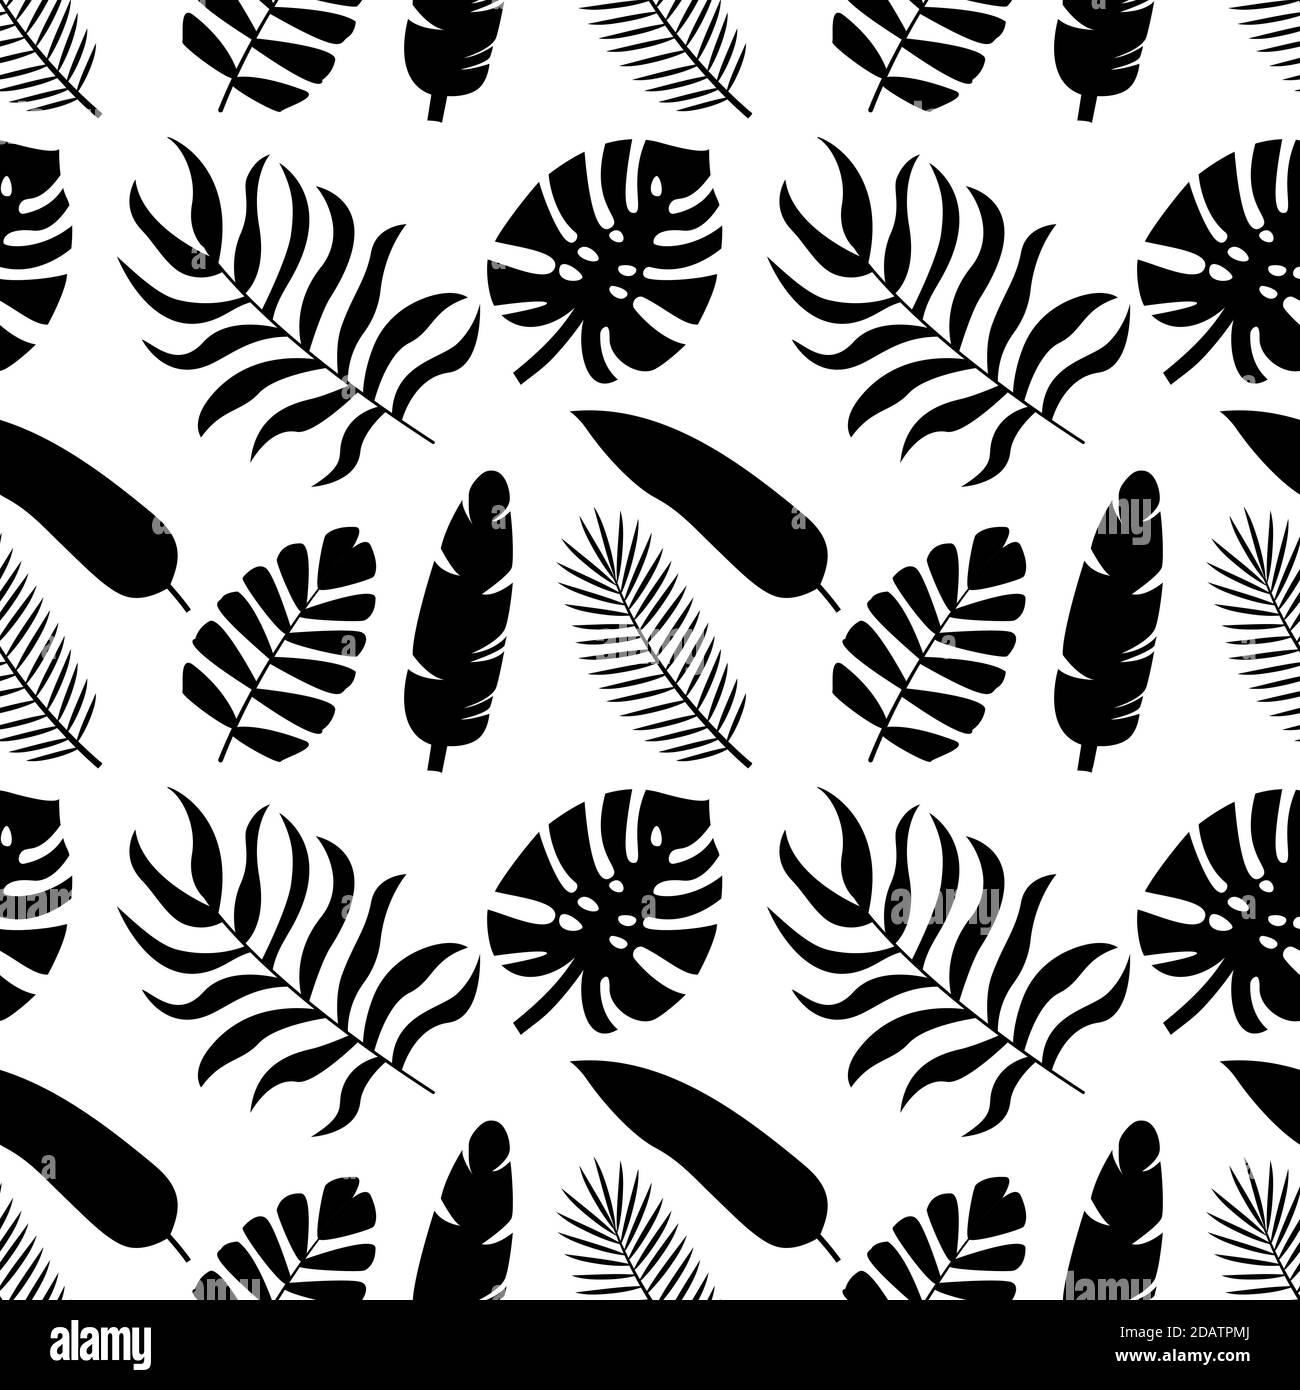 Nahtloses Muster tropischer Silhouetten von Palmblättern. Monstera, Kokosnuss, Banane, Mango, chamaedorea. Vektorgrafik auf weißem Hintergrund Stock Vektor